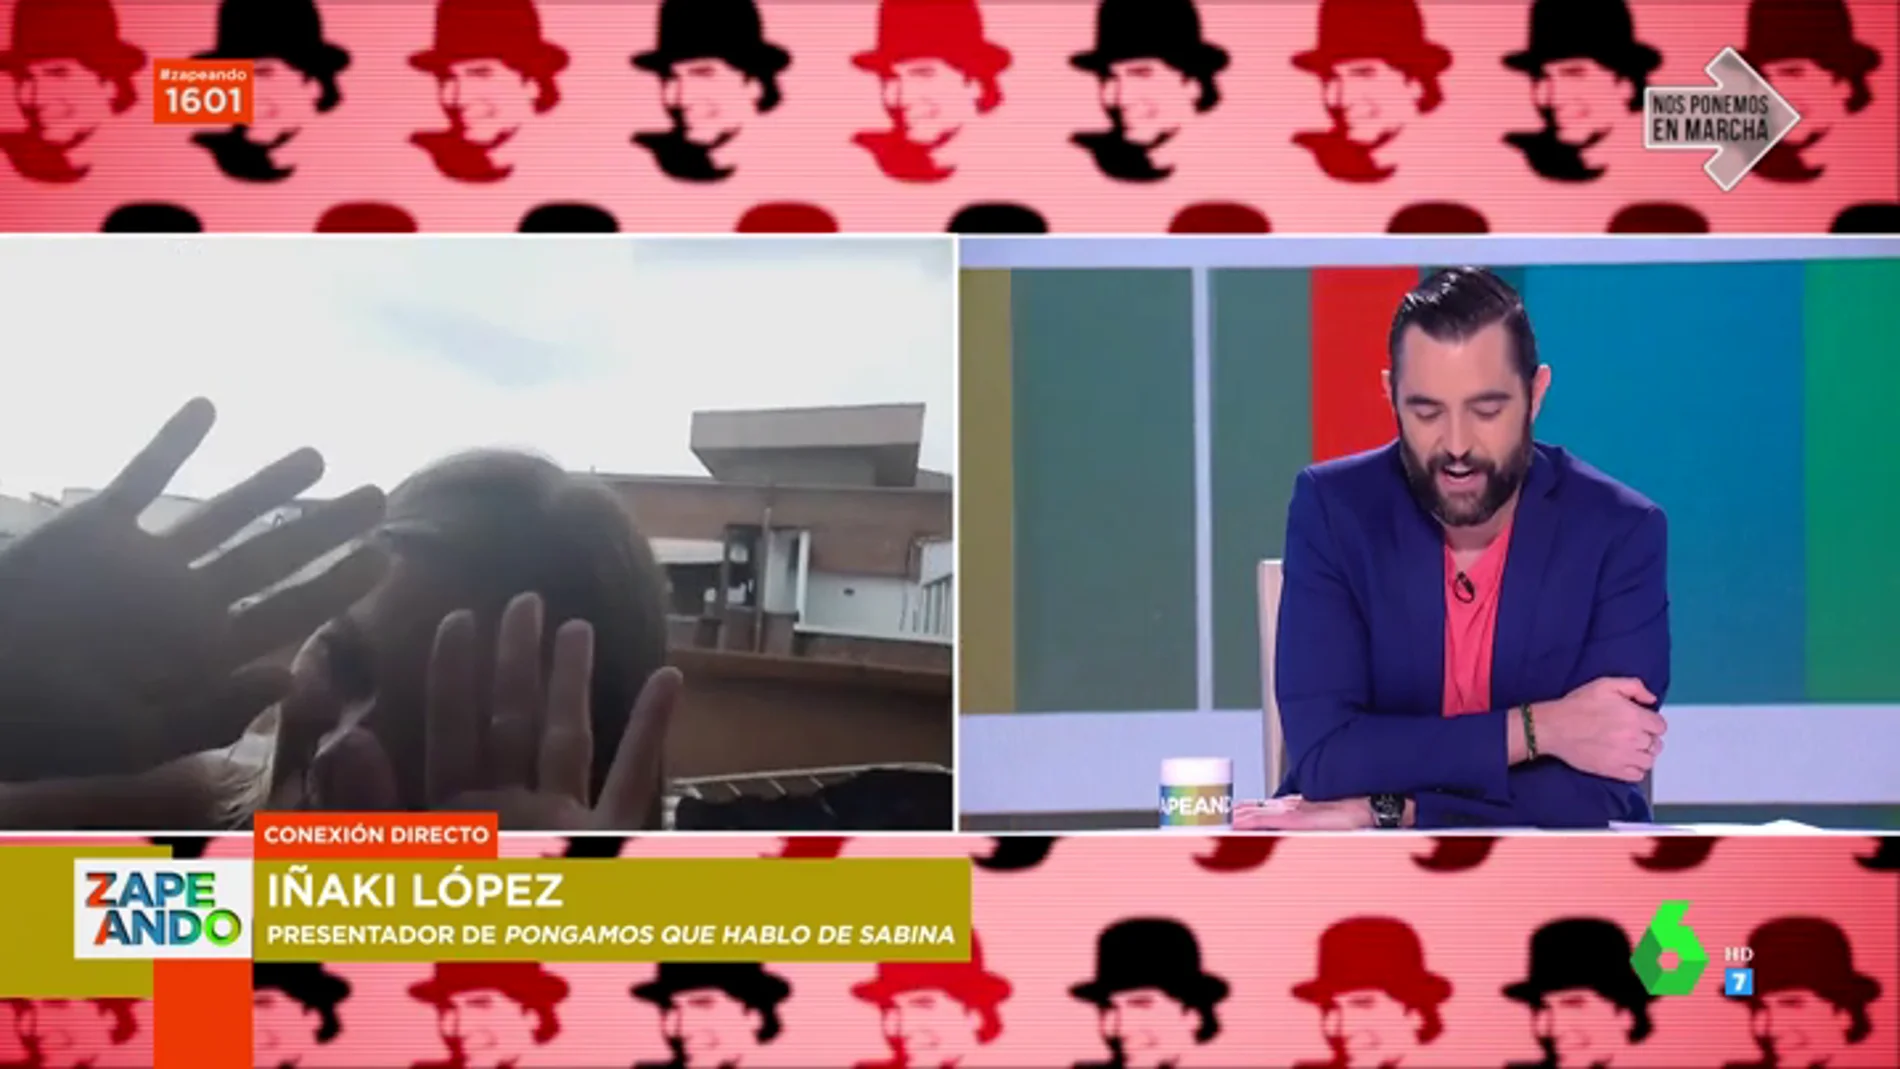 Andrea Ropero boicotea sin querer a Iñaki López en pleno directo: "Somos gente de tele, pero no siempre se nota"